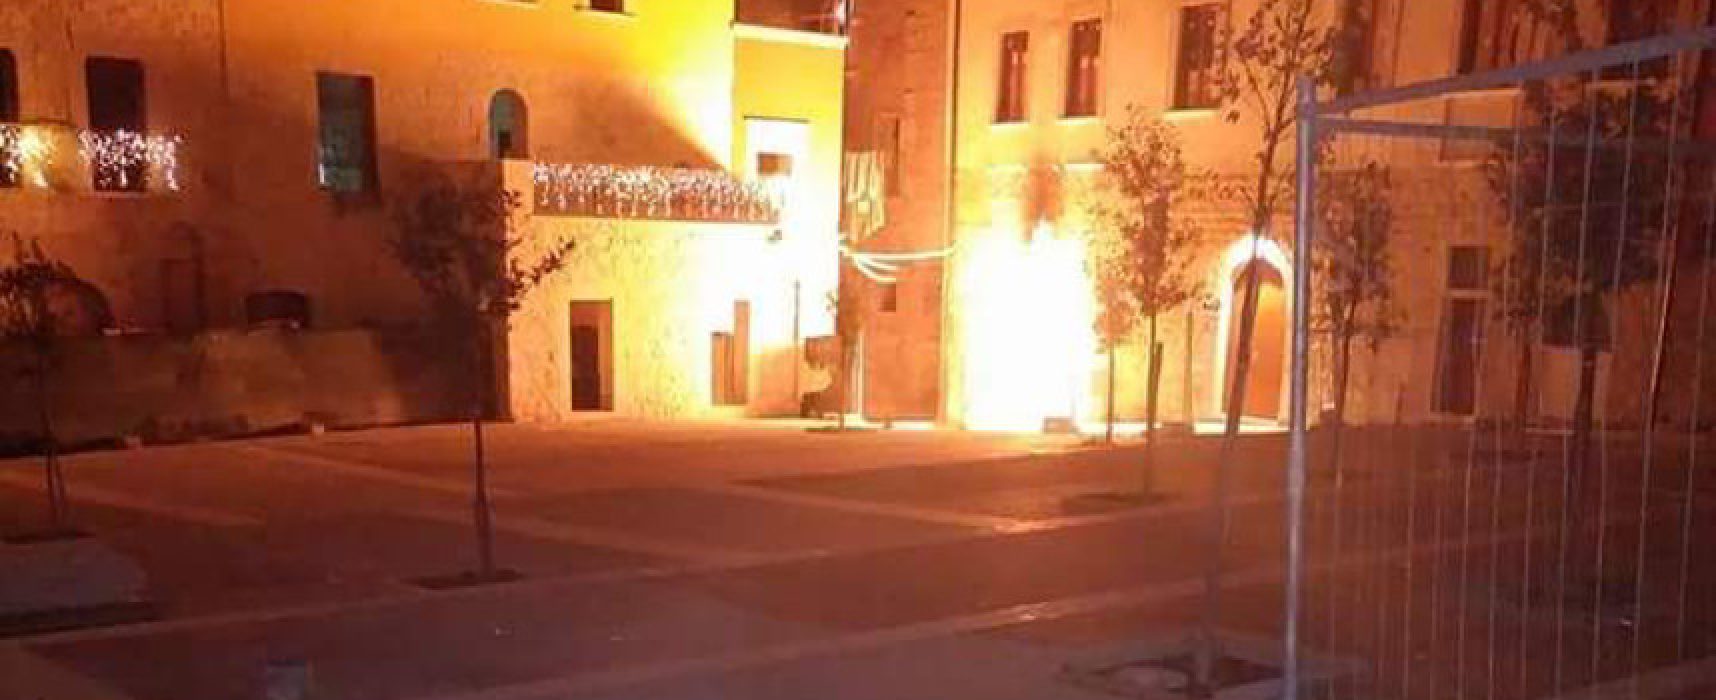 Incendio a contatore gas scuola “Abbascià” e fuga di gas / VIDEO